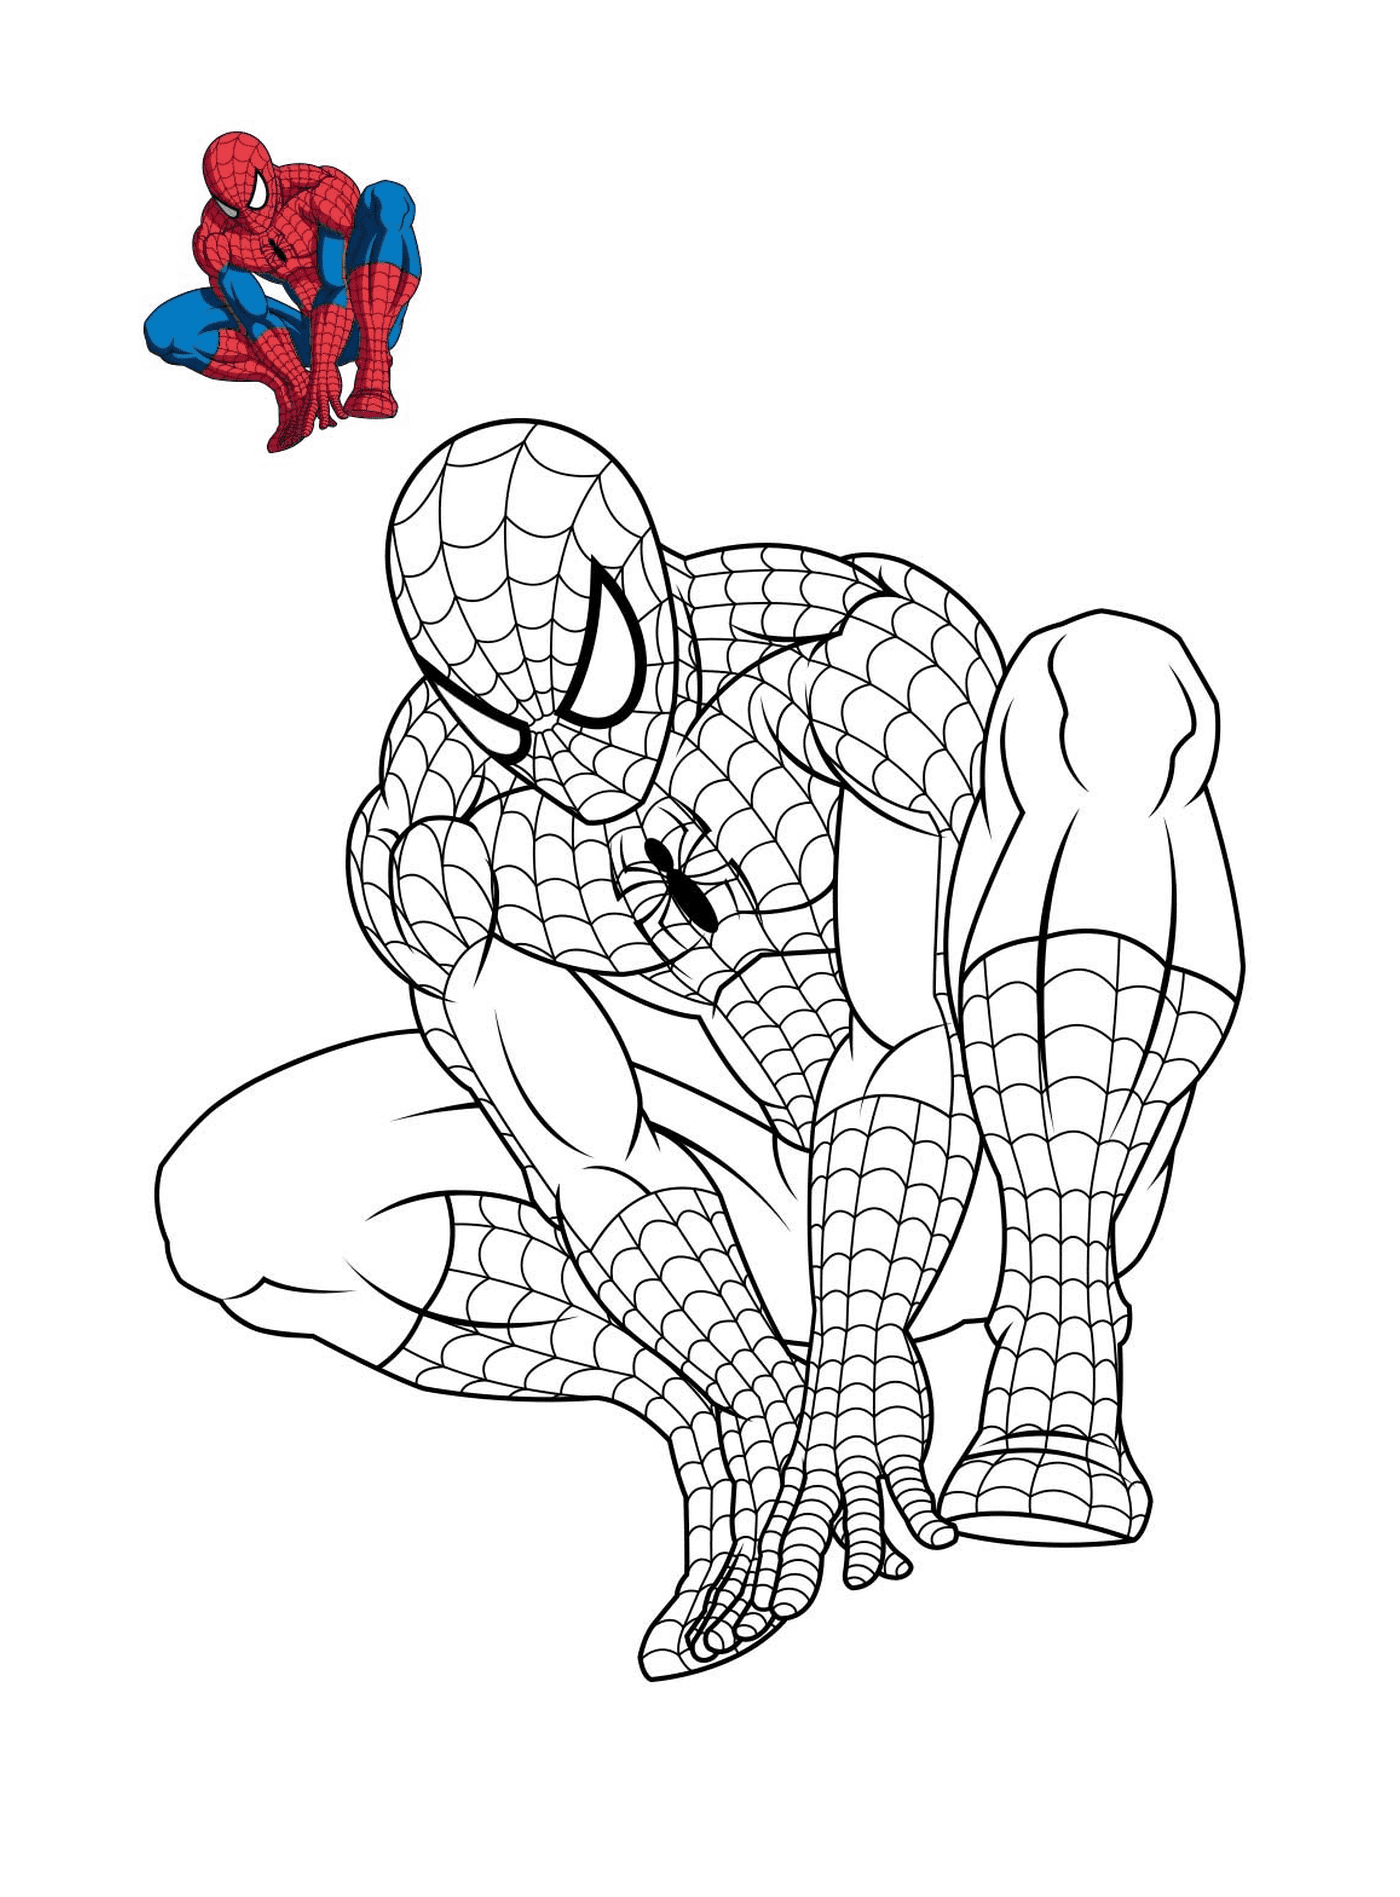  Spider-Man pensando di colorare 